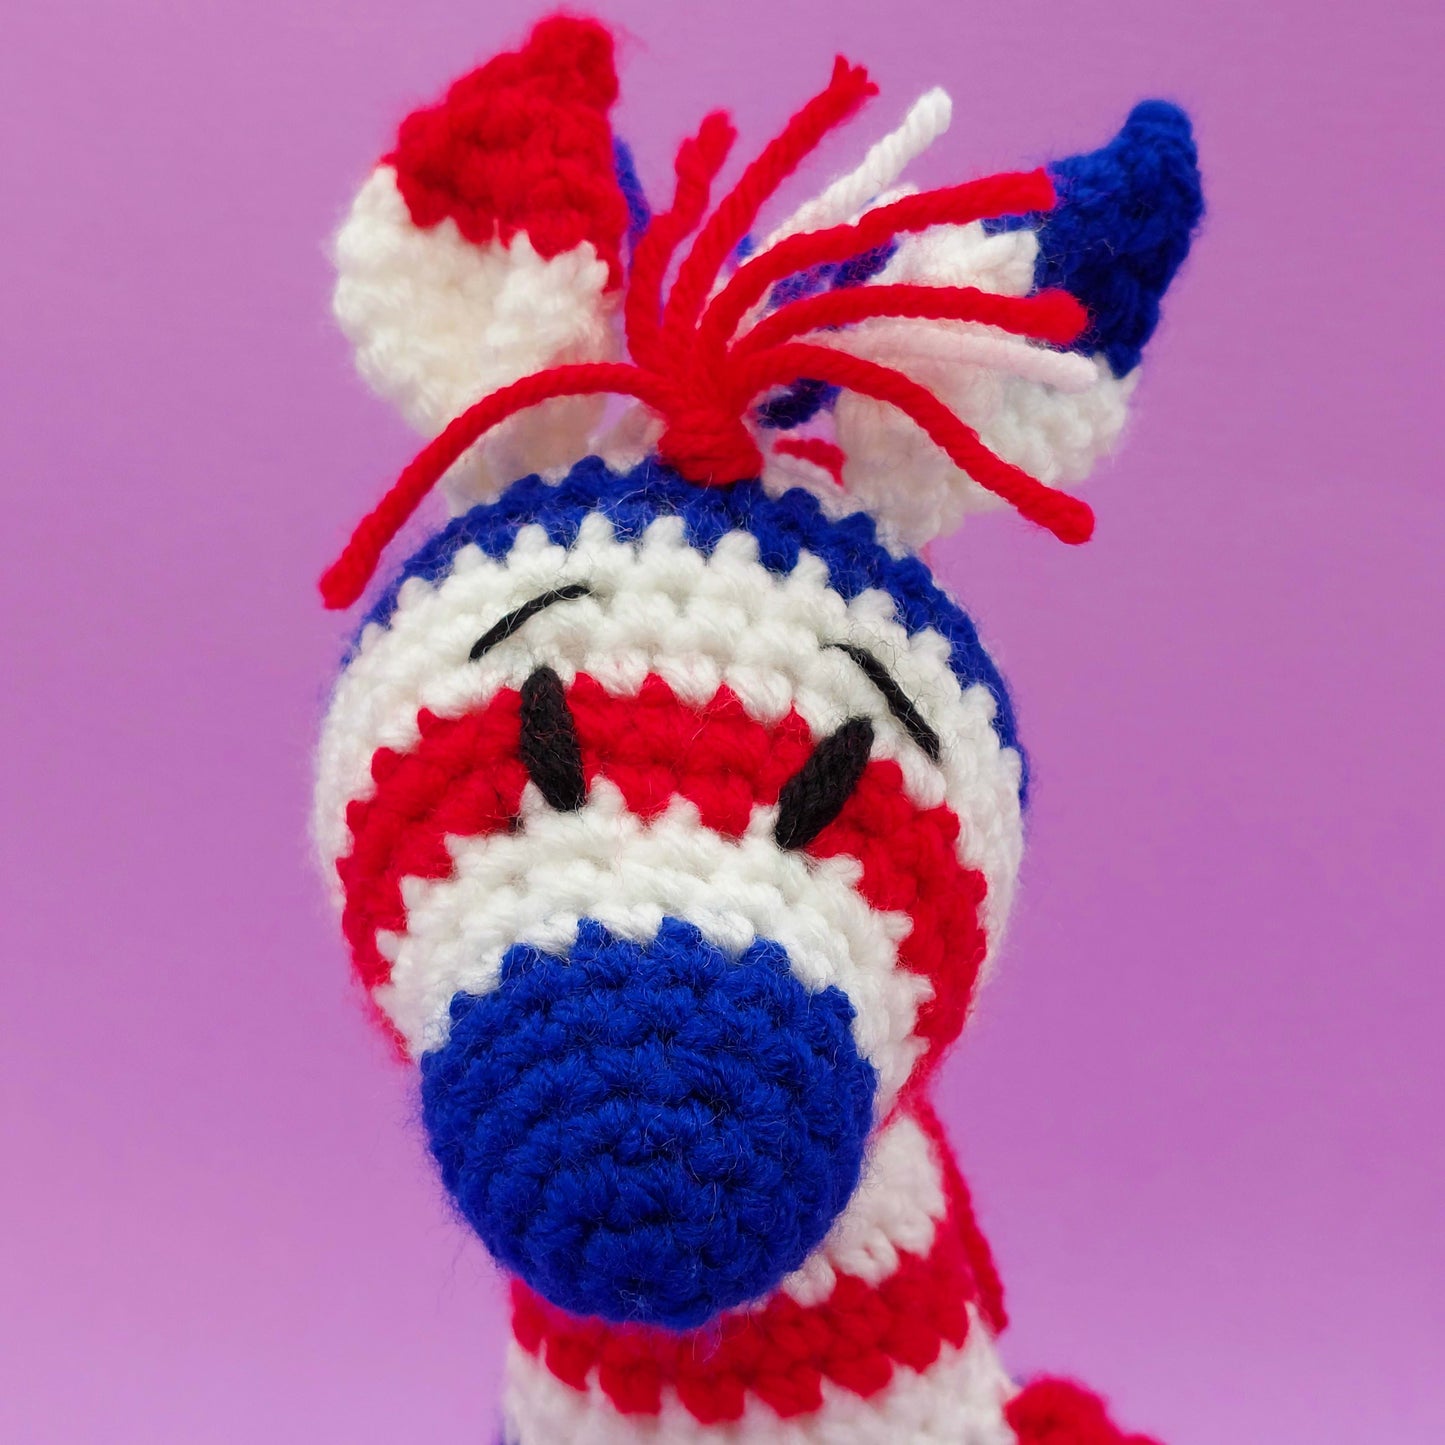 SPECIAL EDITION JUBILEE Zebras Crochet Kit